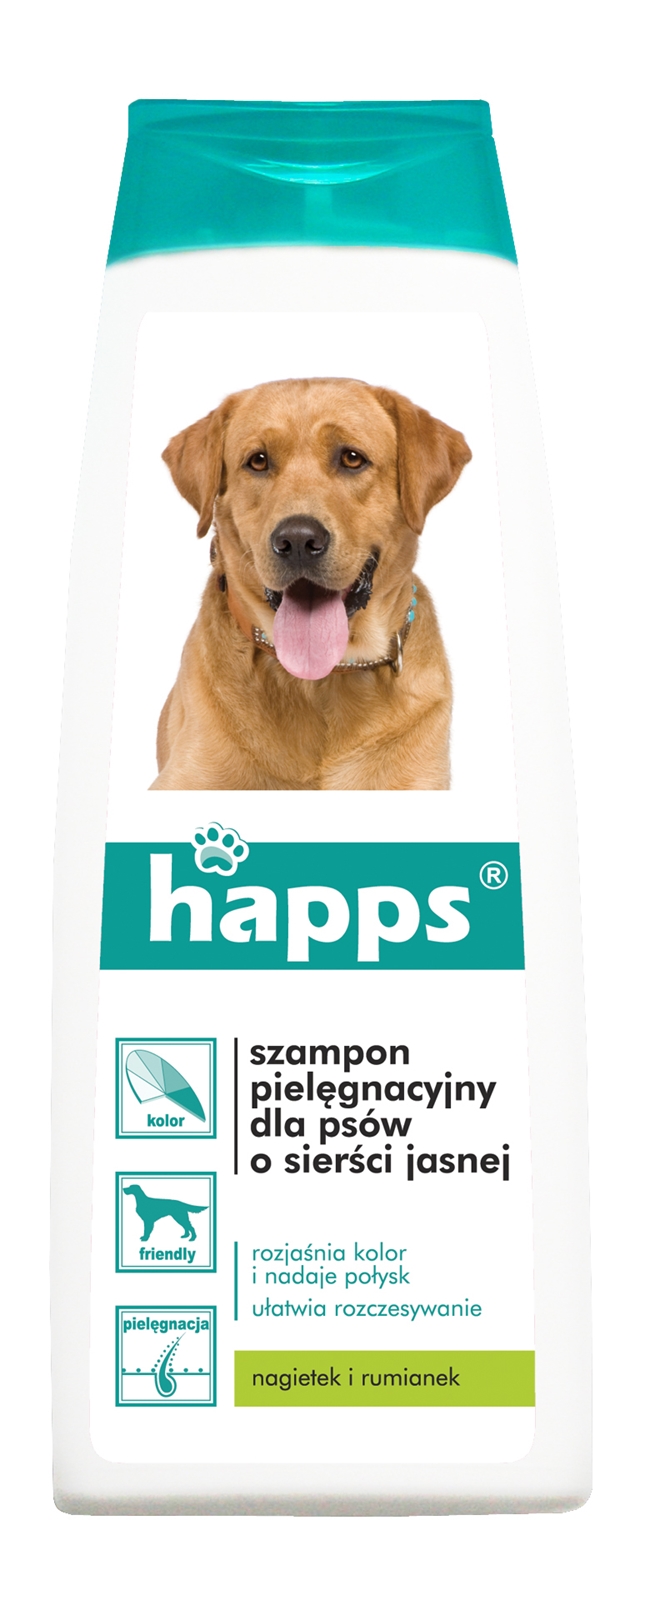 Happs, szampon pielęgnacyjny dla psów sierści jasnej, płyn 200ml